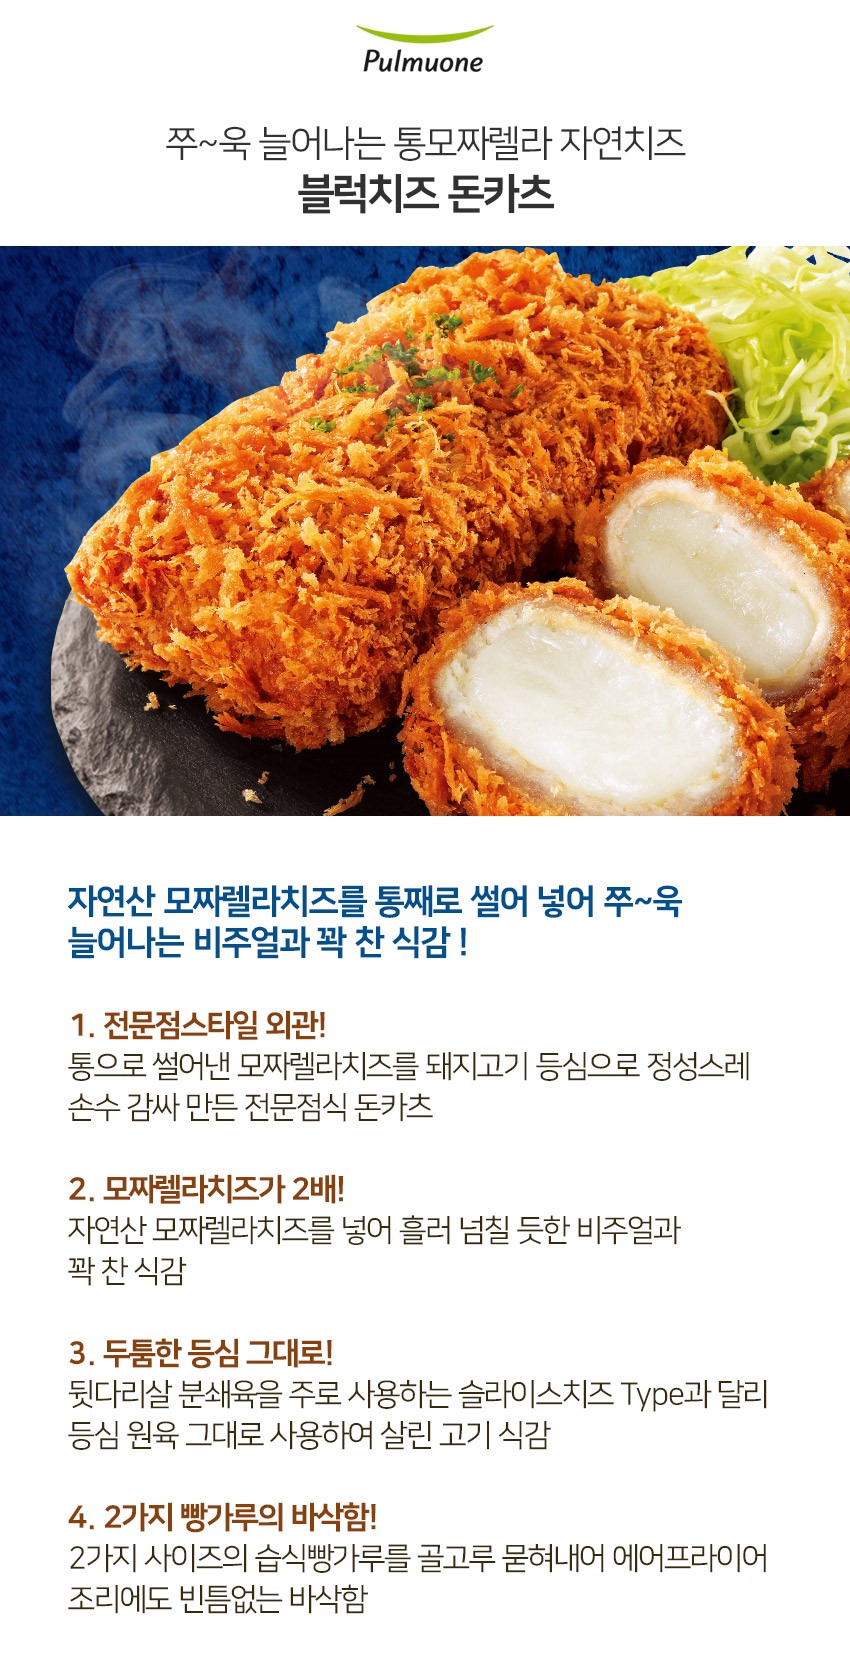 韓國食品-[圃木園] 芝士熱狗棒 420g